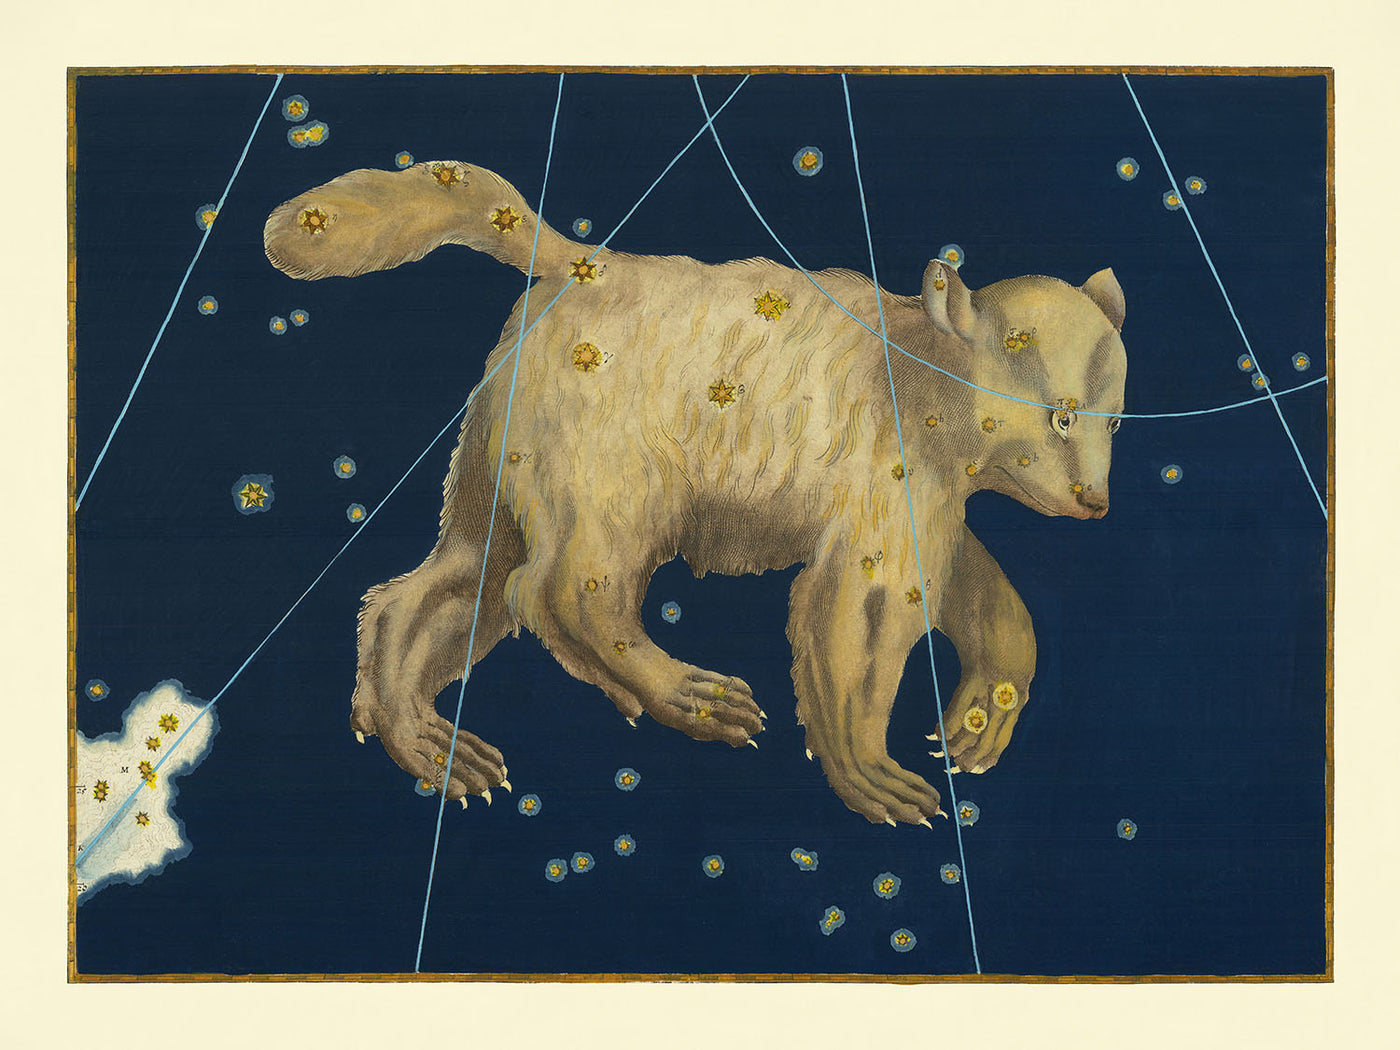 Alte Sternenkarte des Großen Bären von Johann Bayer, 1603